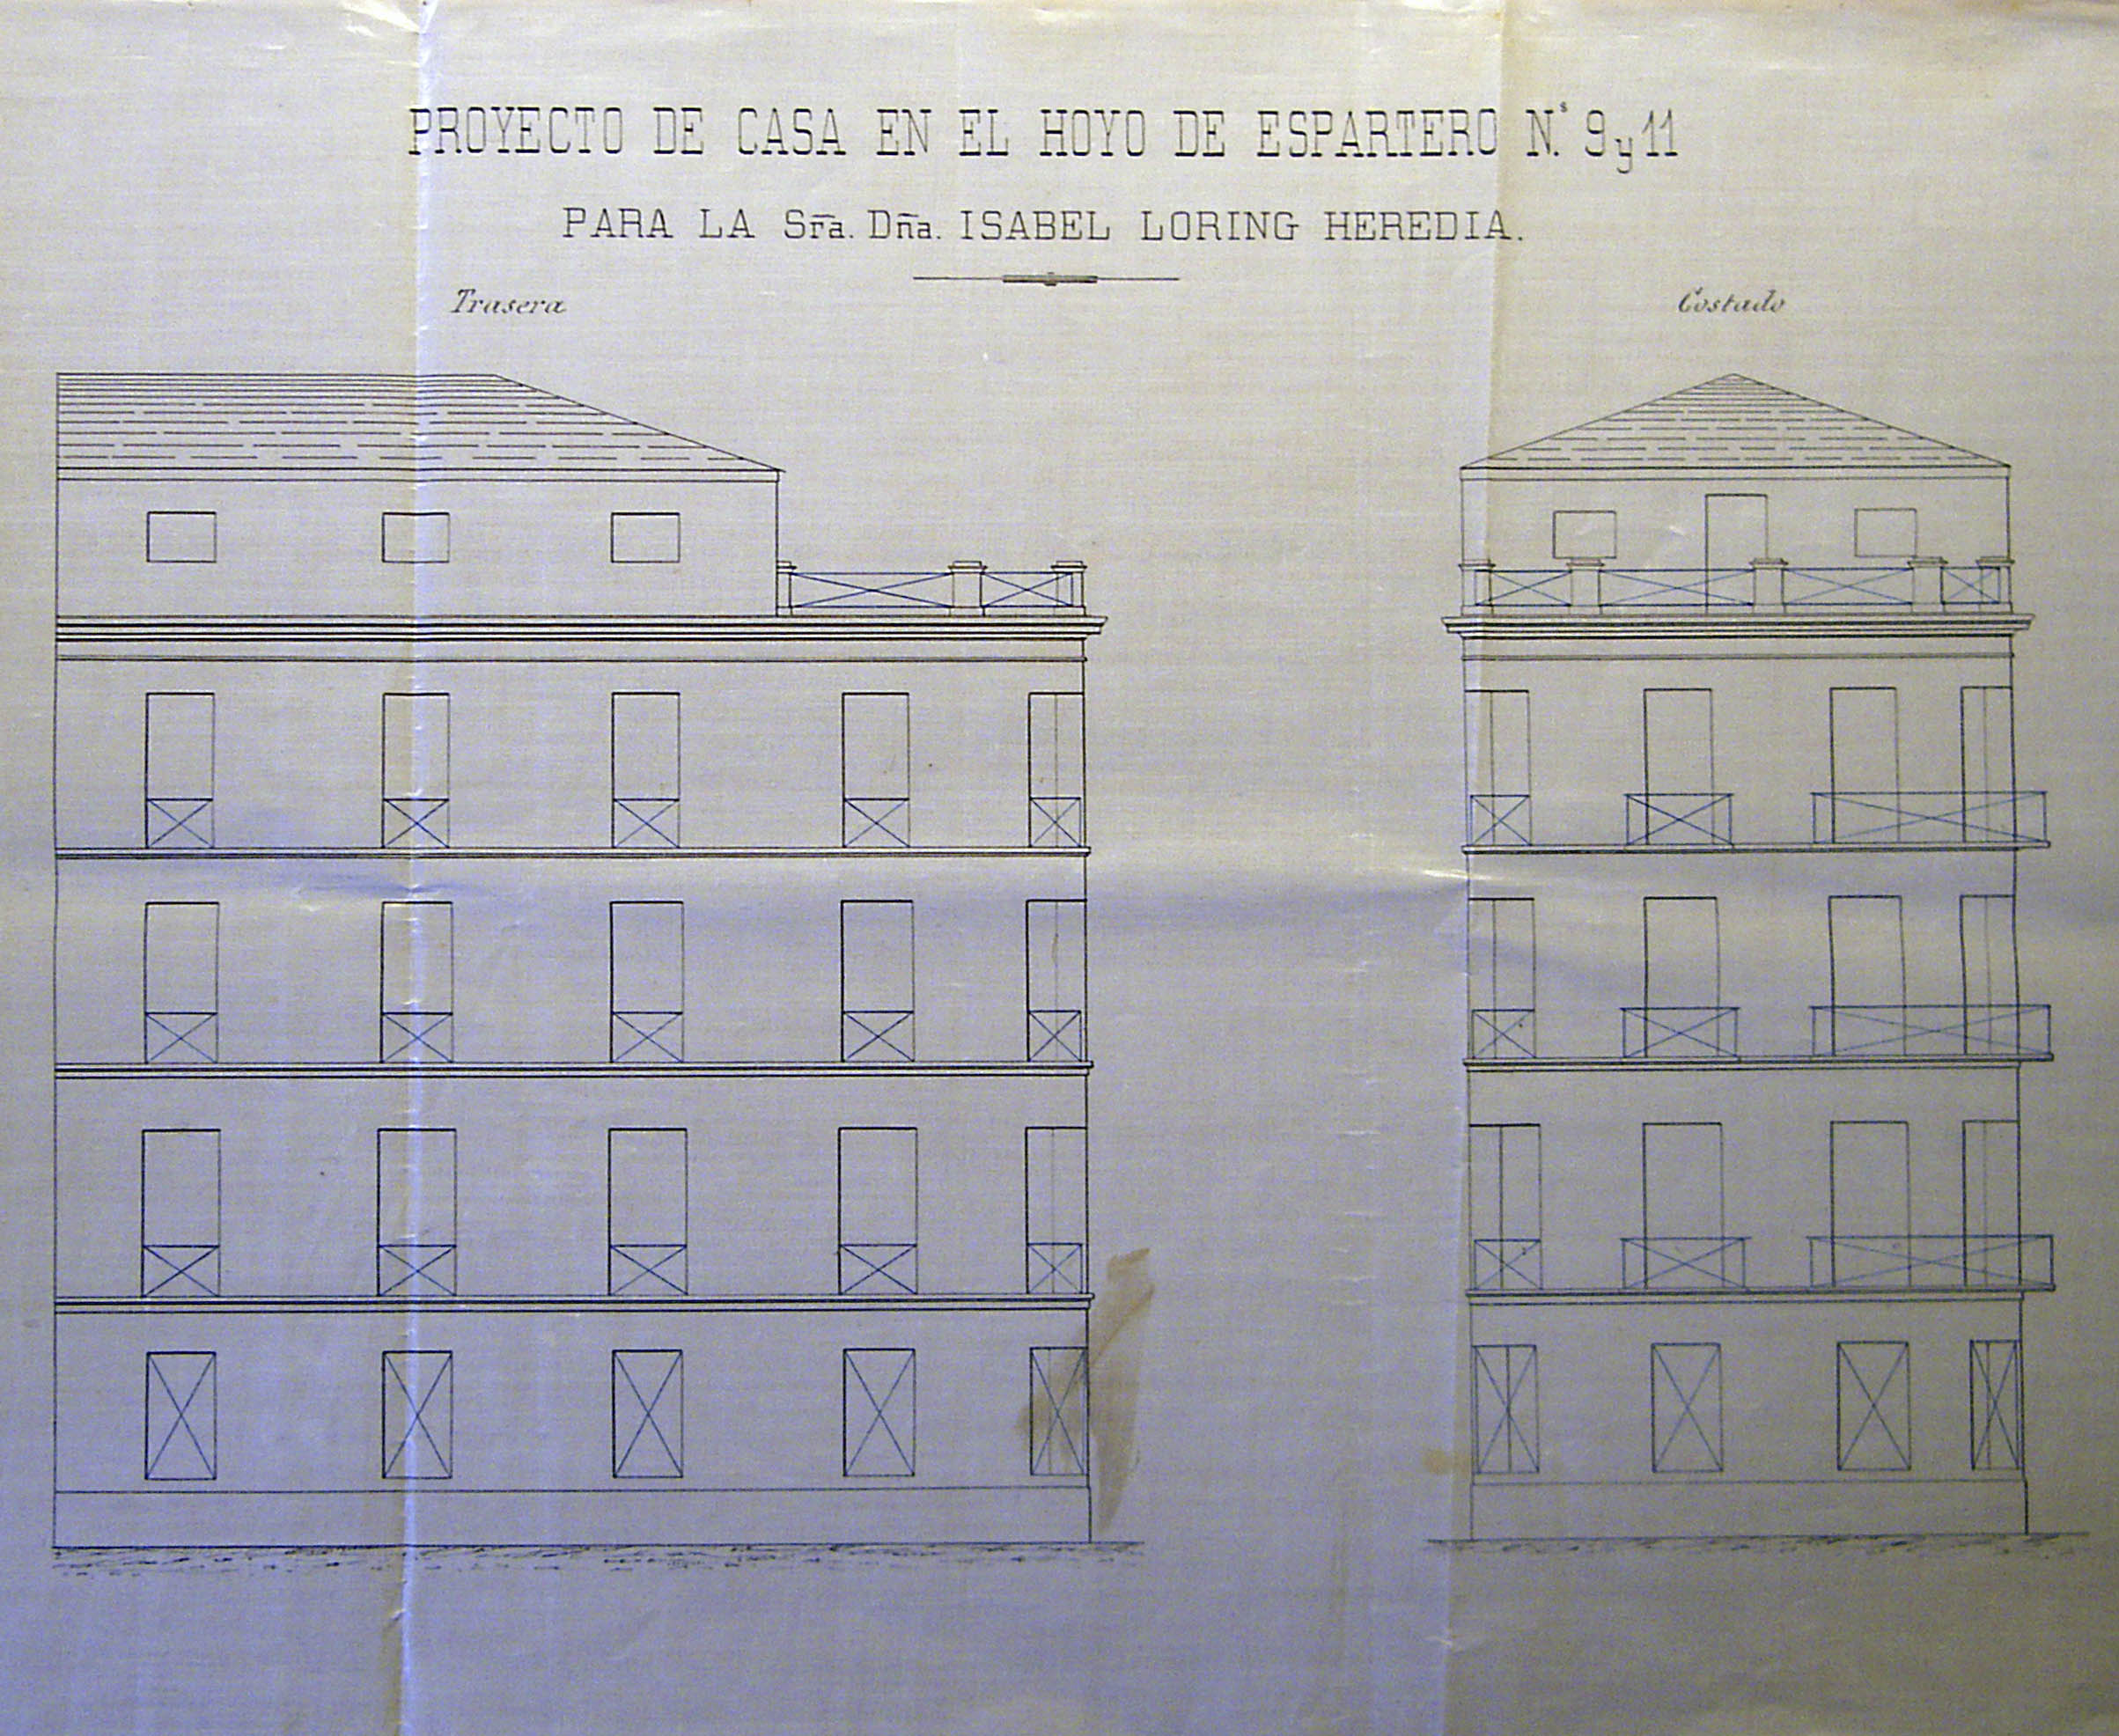 Proyecto de casa en el Hoyo de Espartero nº 9 y 11, alzados trasero y costado, 1892 & 1894.